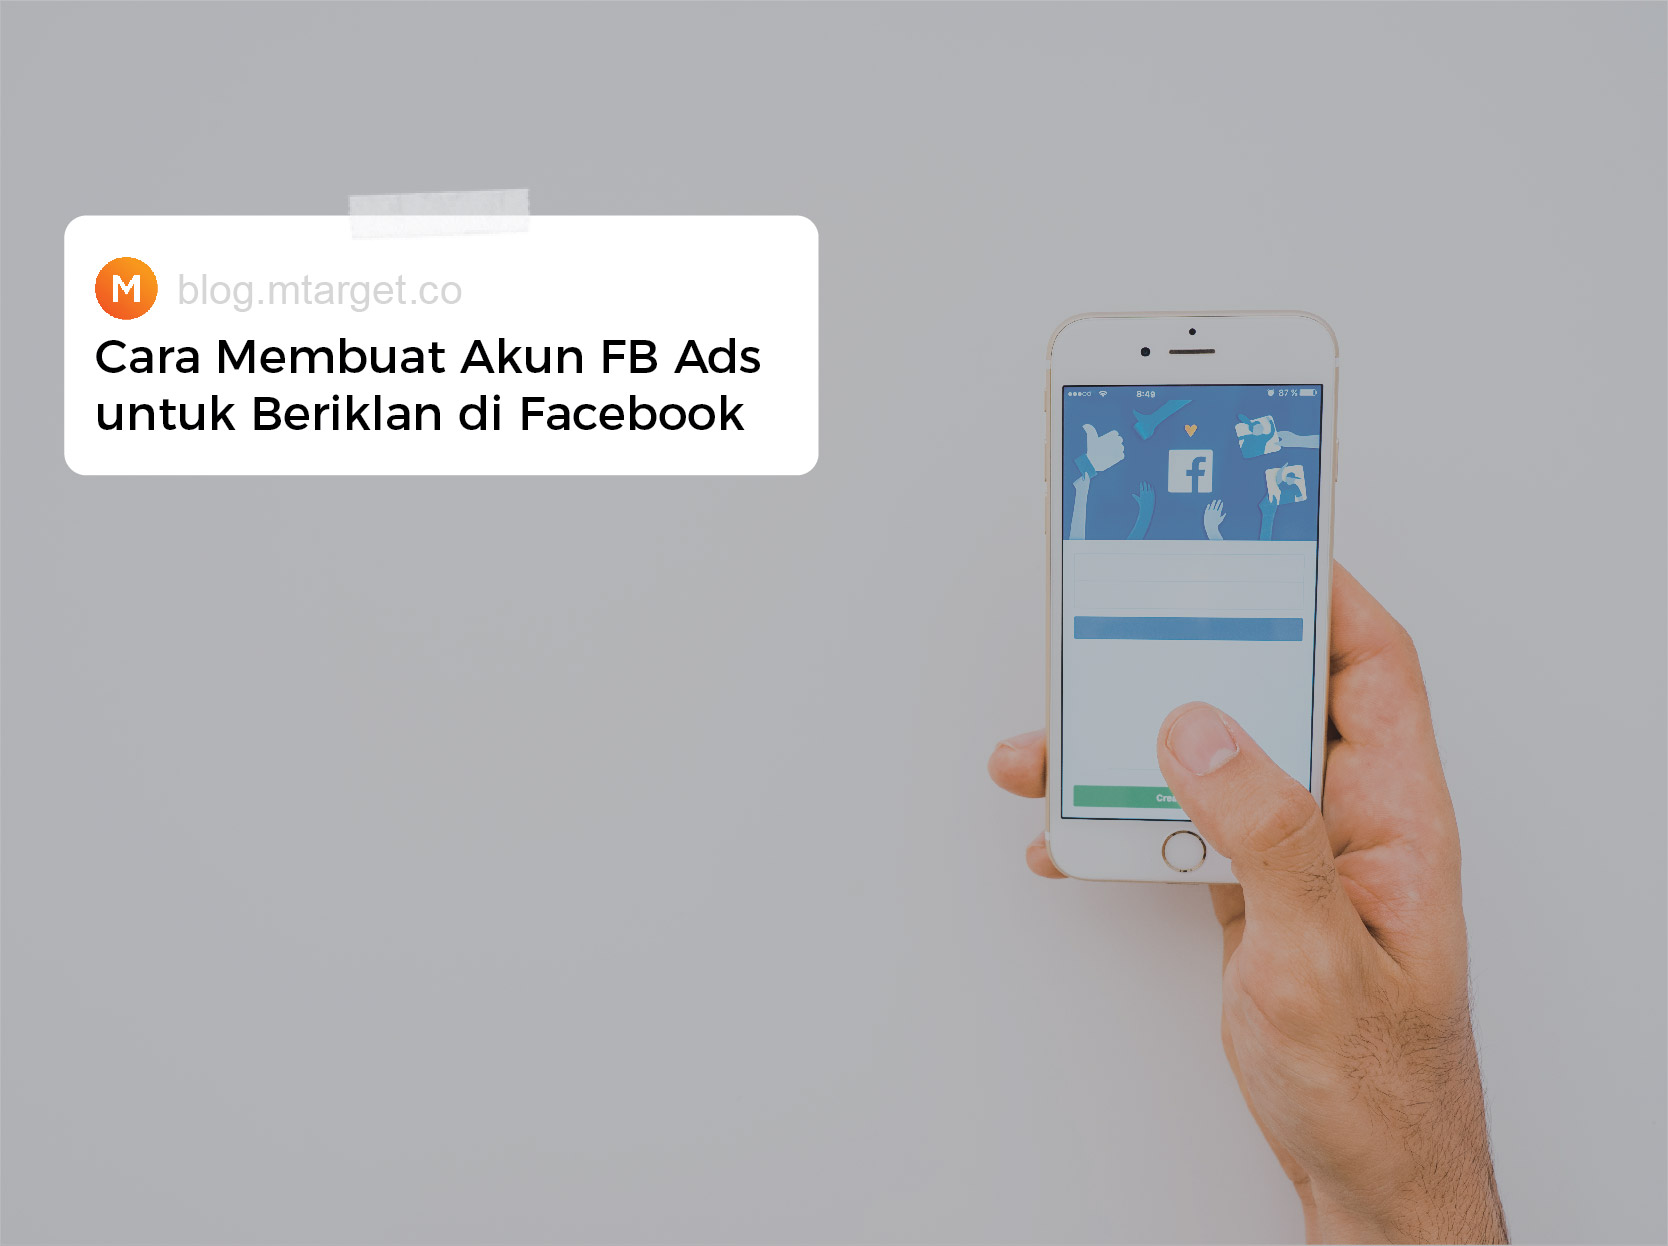 Cara Buat Akun Baru Di Fb. Cara Membuat Akun FB Ads untuk Beriklan di Facebook